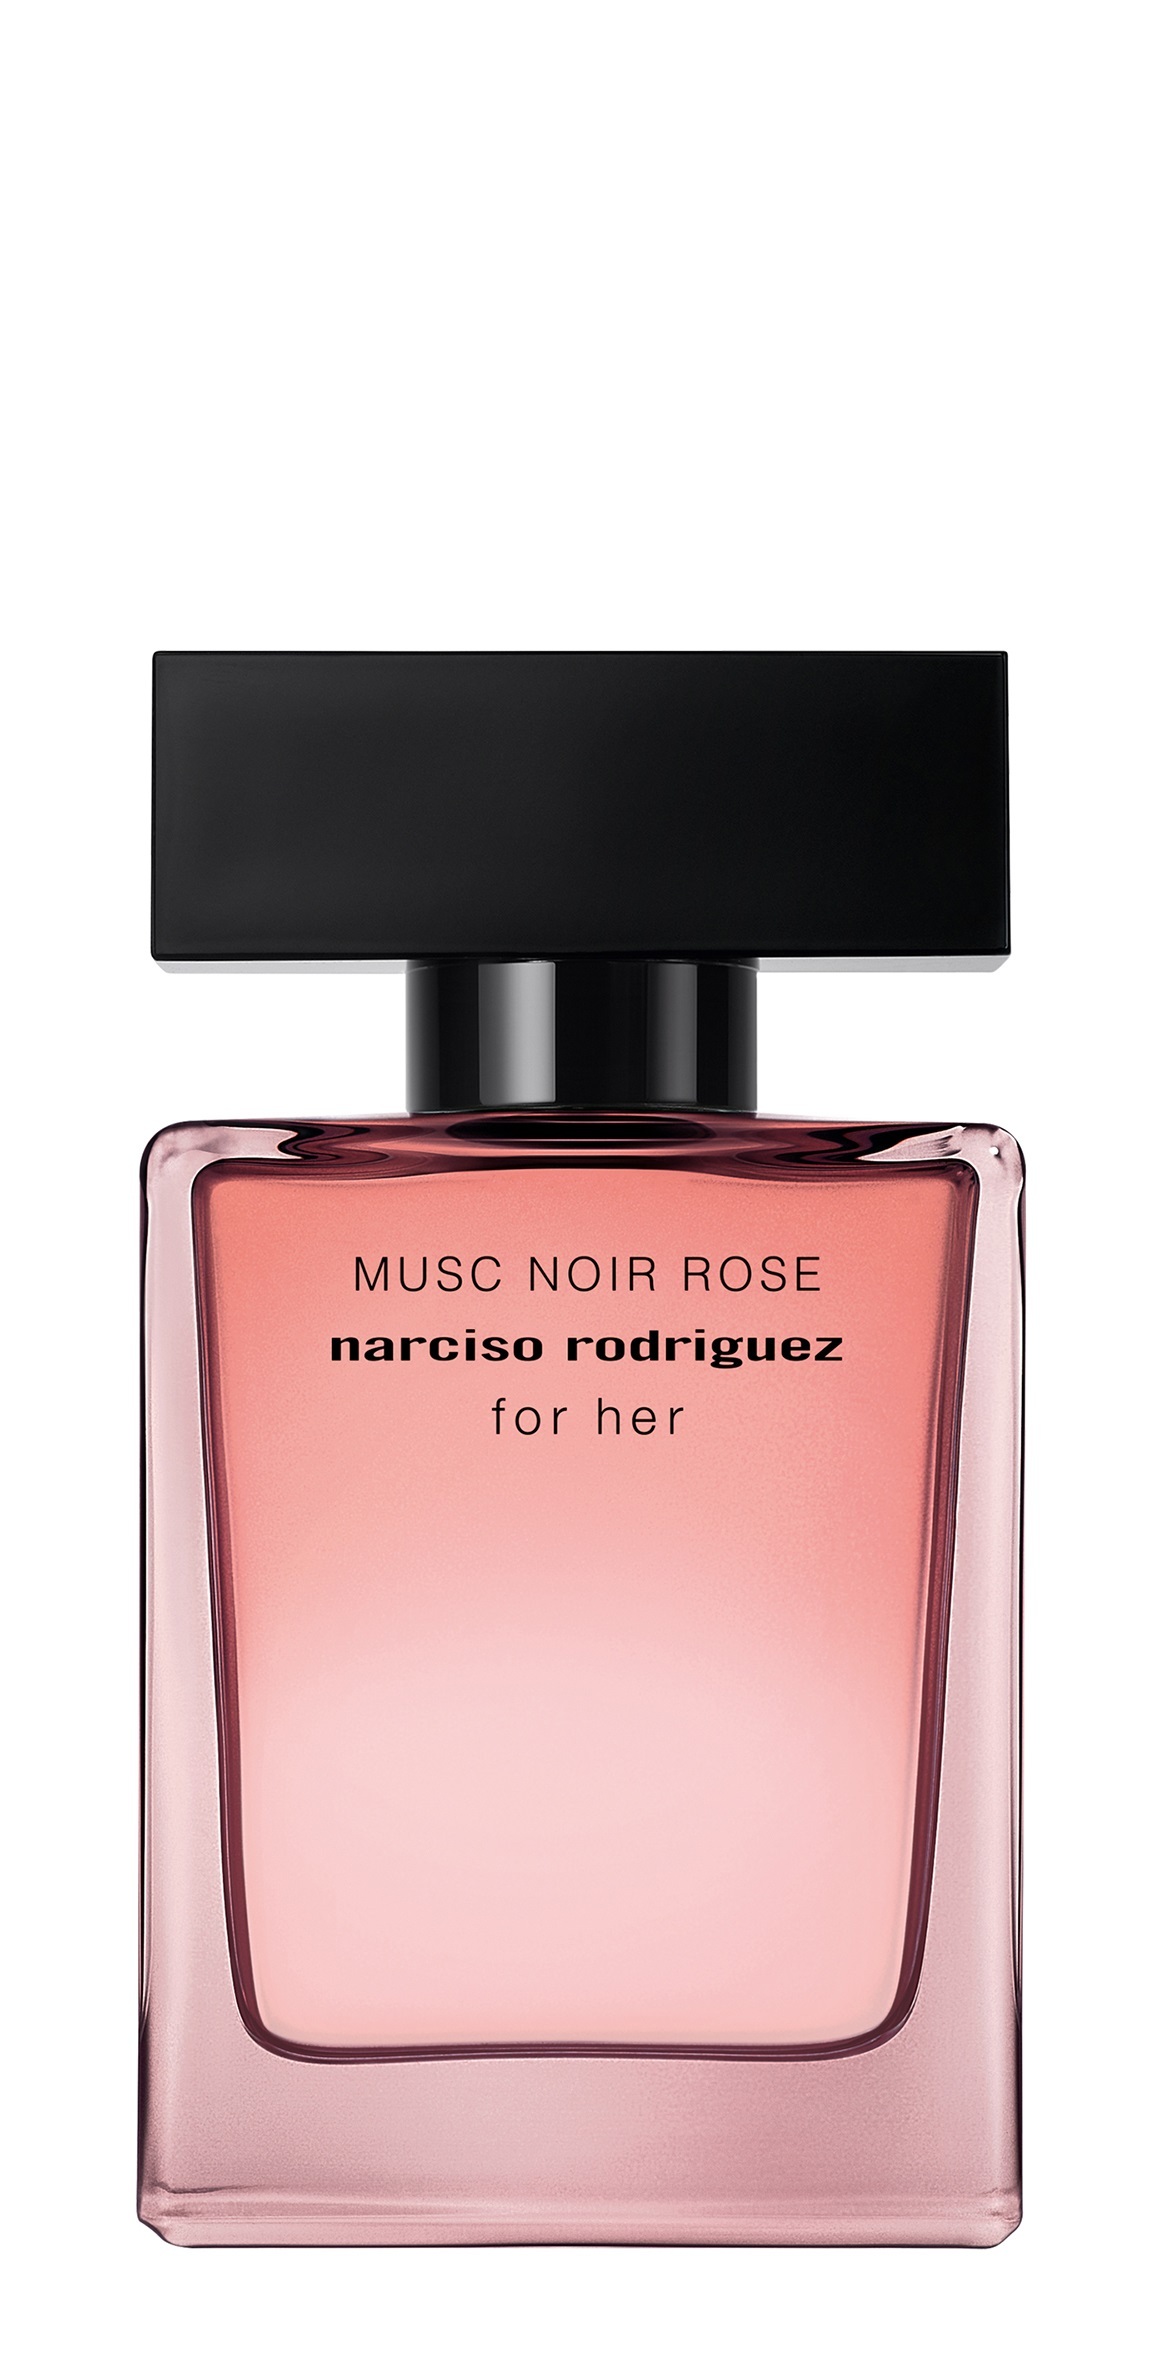 Narciso Rodriguez for her Eau de Parfum. Narciso Rodriguez Musc Noir 30 ml. Narciso Rodriguez for her Eau de Parfum Narciso Rodriguez. Нарцисо Родригес Noir Rose духи. Нарциссо родригес женский парфюм